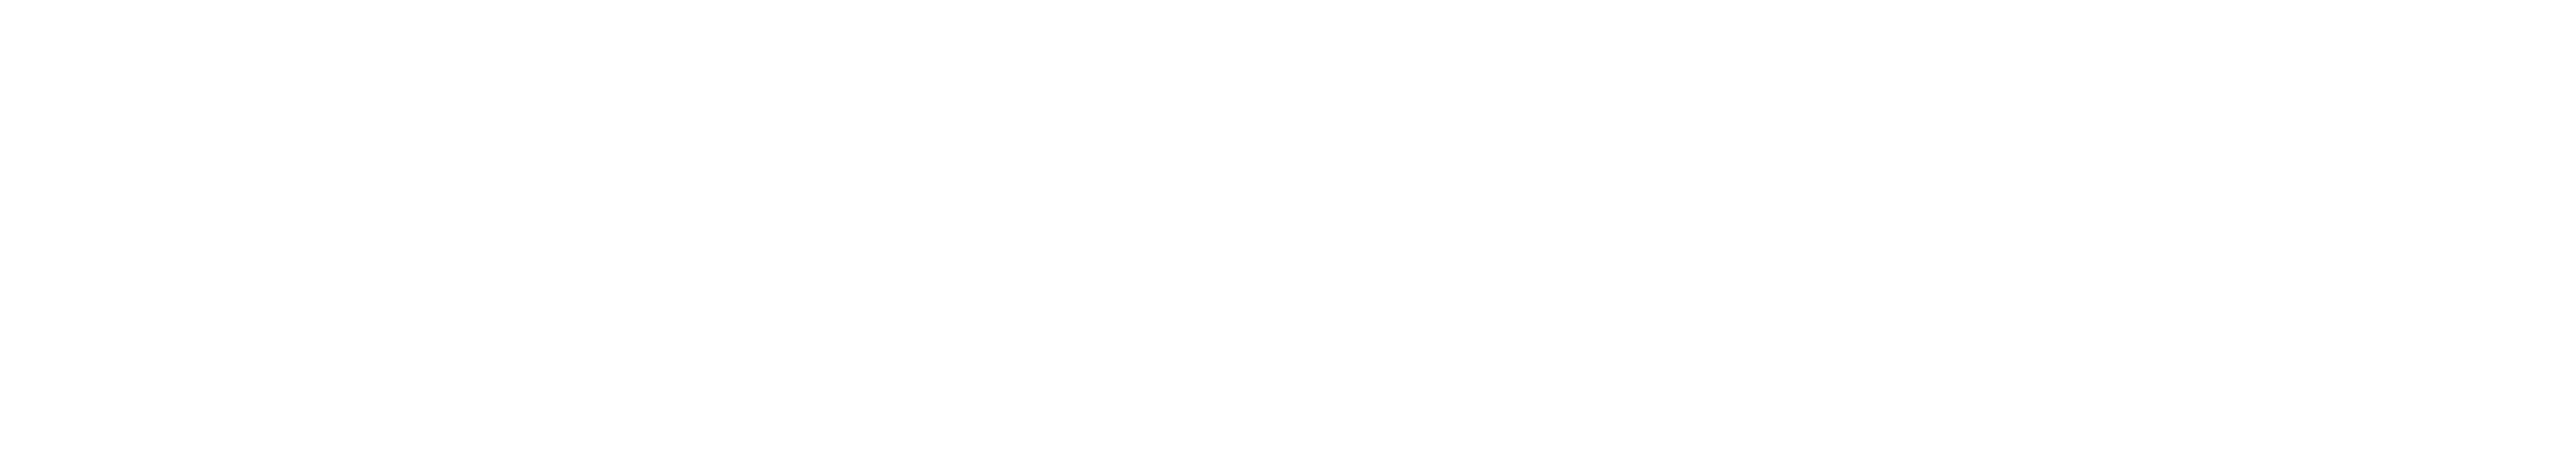 Re-Leaf